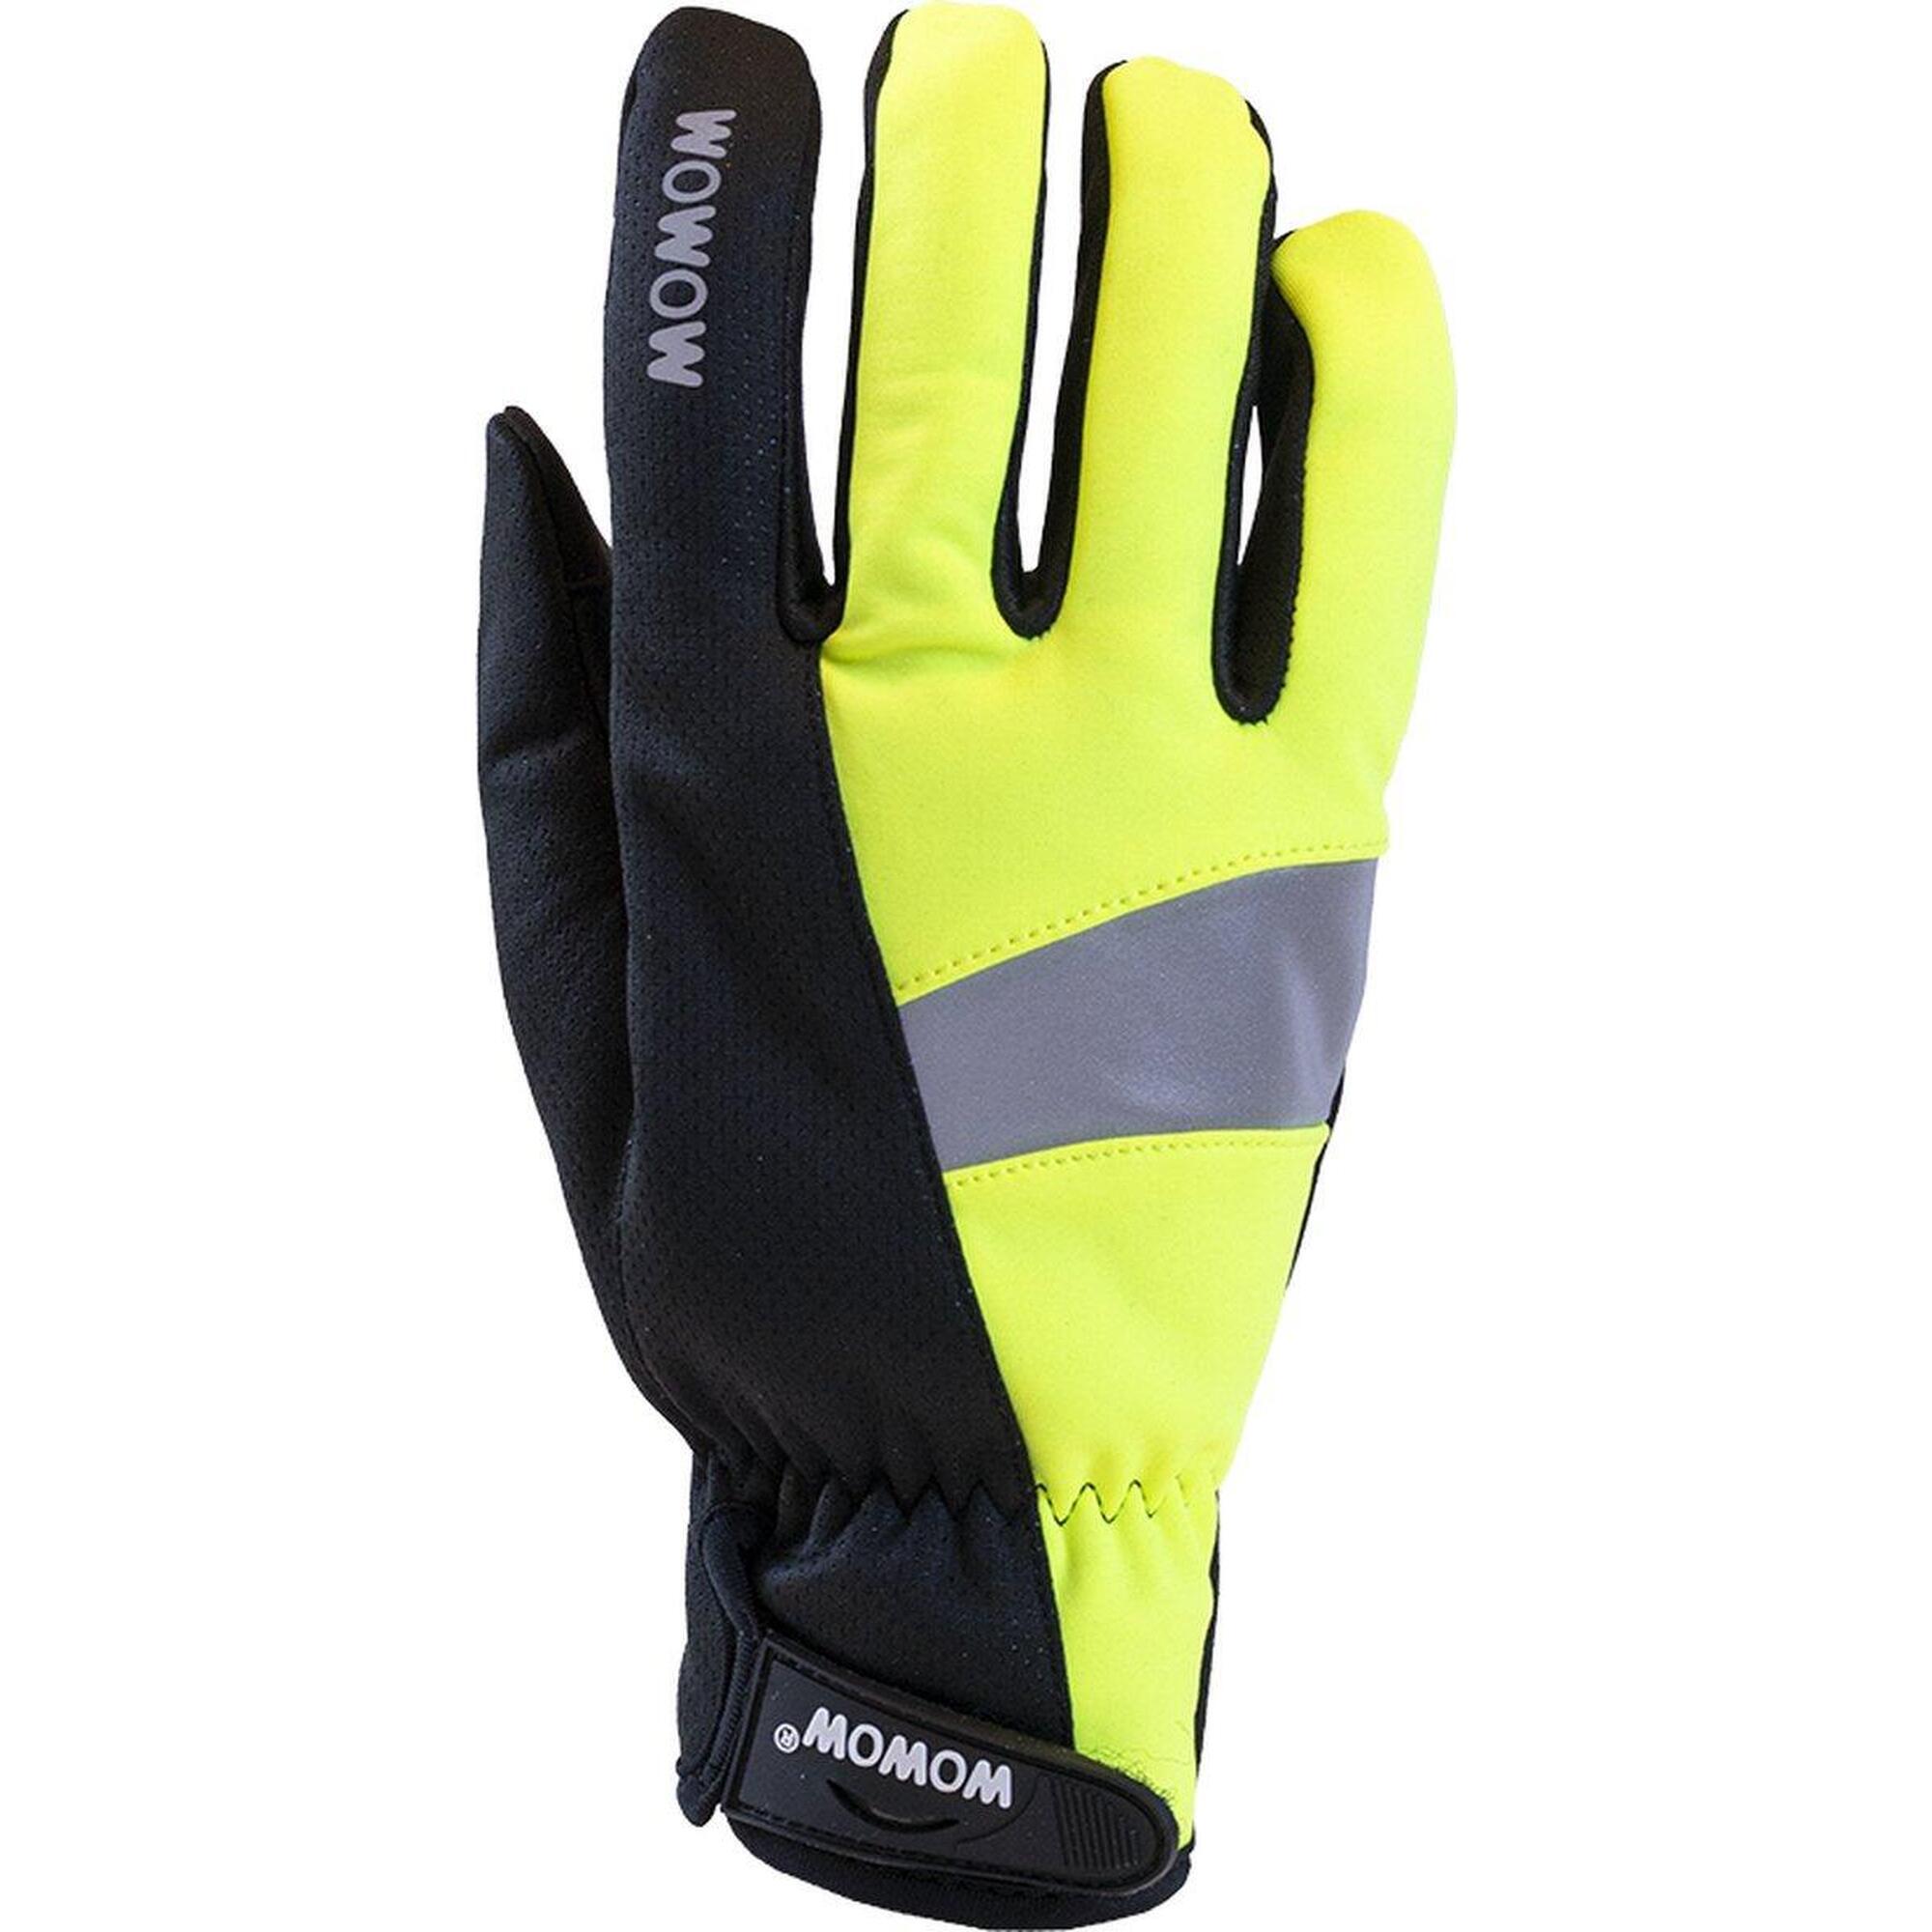 Fahrradhandschuhe in fluo winddicht Größe M - Cycle Gloves 2.0 gelb/schwarz